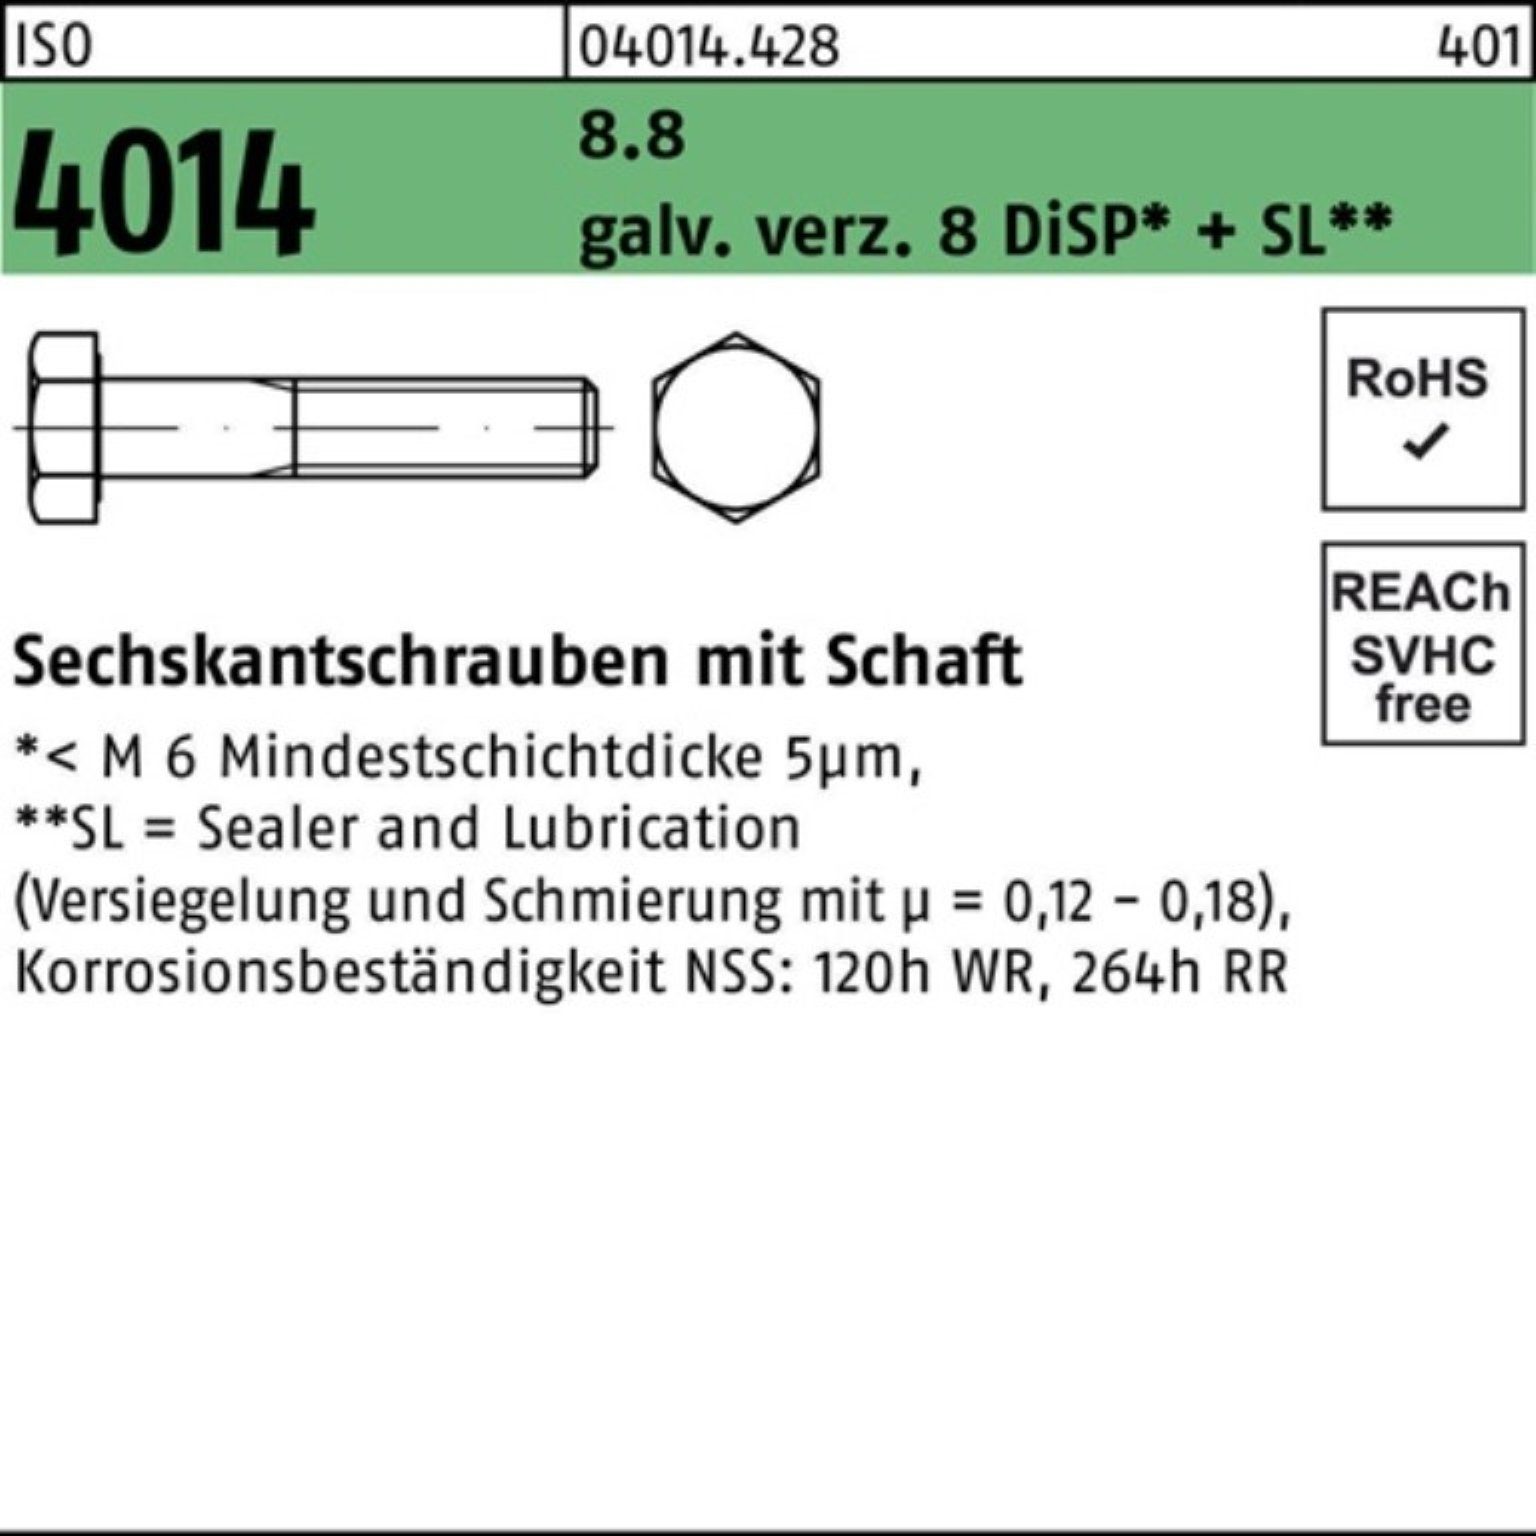 Pack Sechskantschraube M6x110 ISO 8 galv.verz. D 100er 8.8 Sechskantschraube Bufab 4014 Schaft